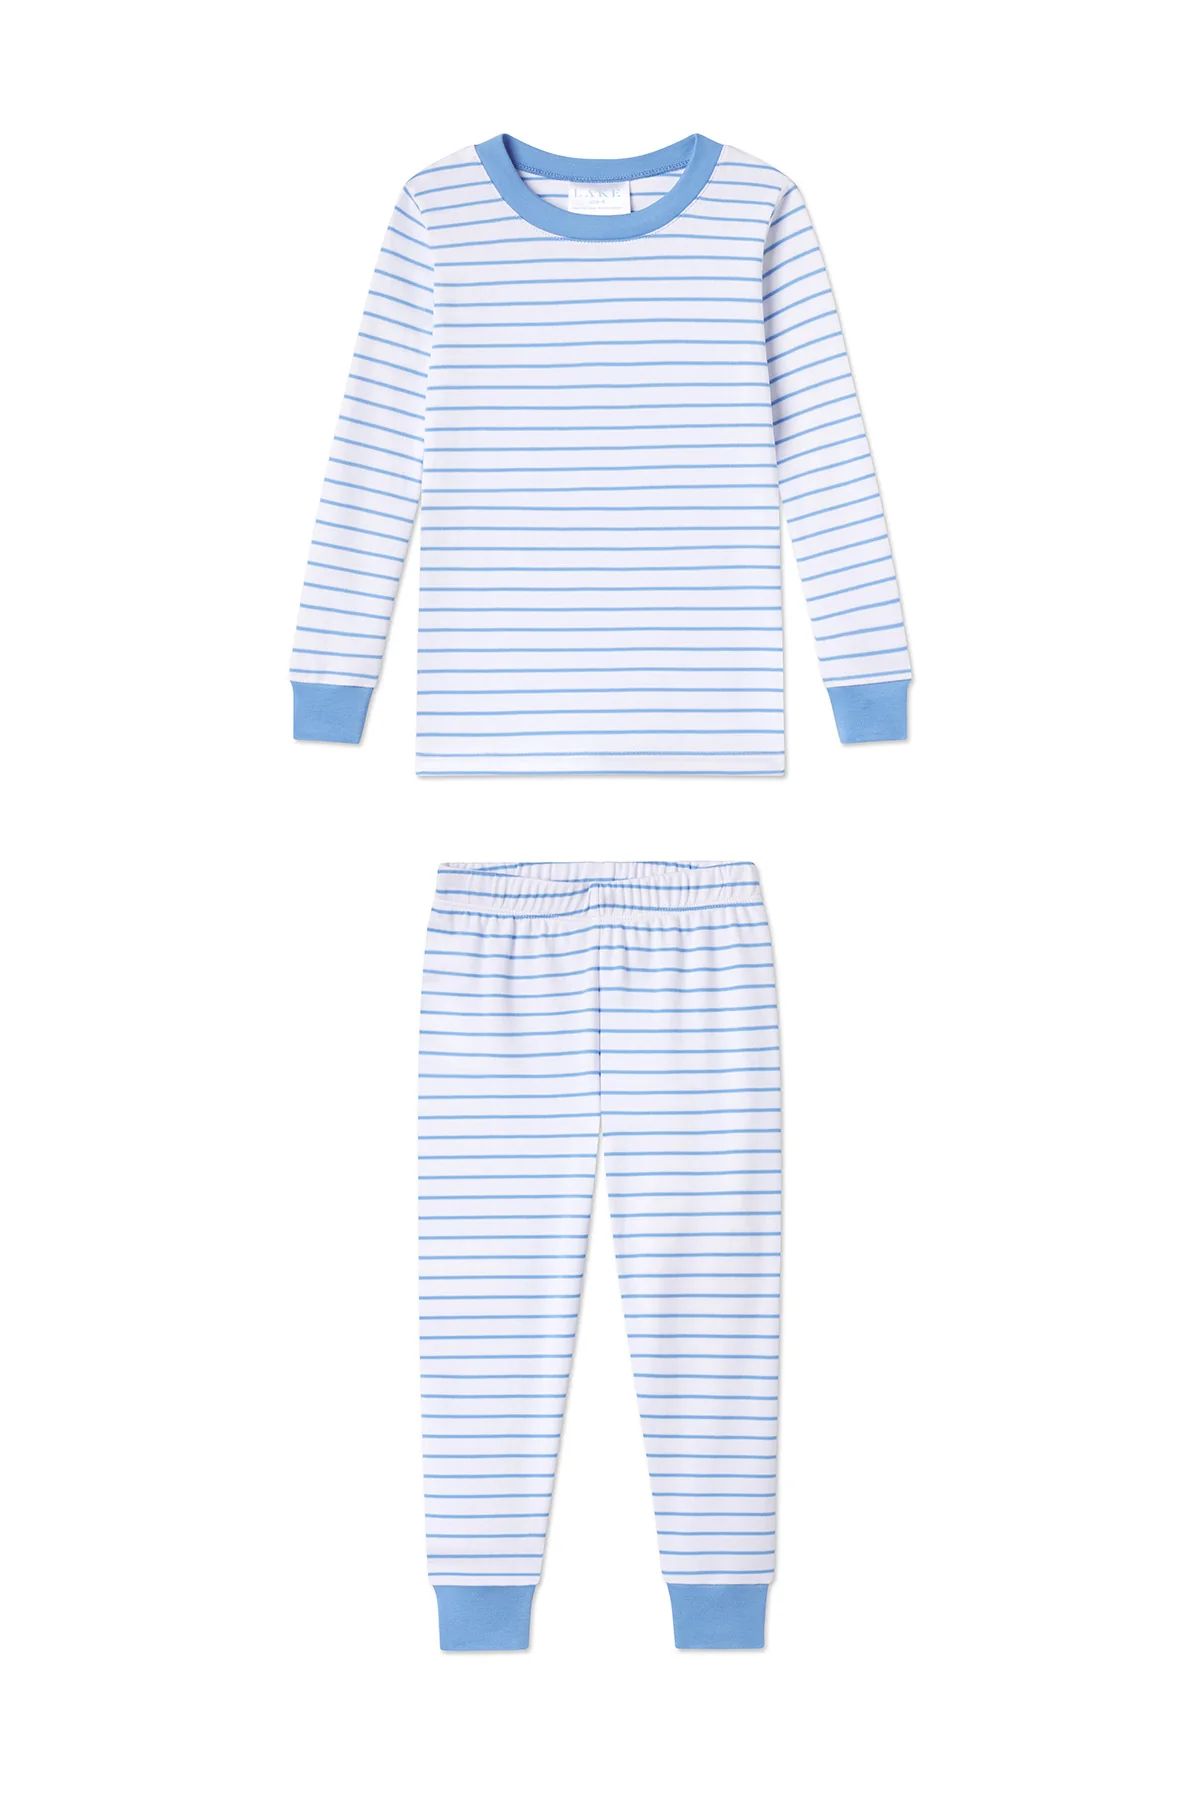 Kids Long-Long Set in Baltic Blue Stripe | Lake Pajamas